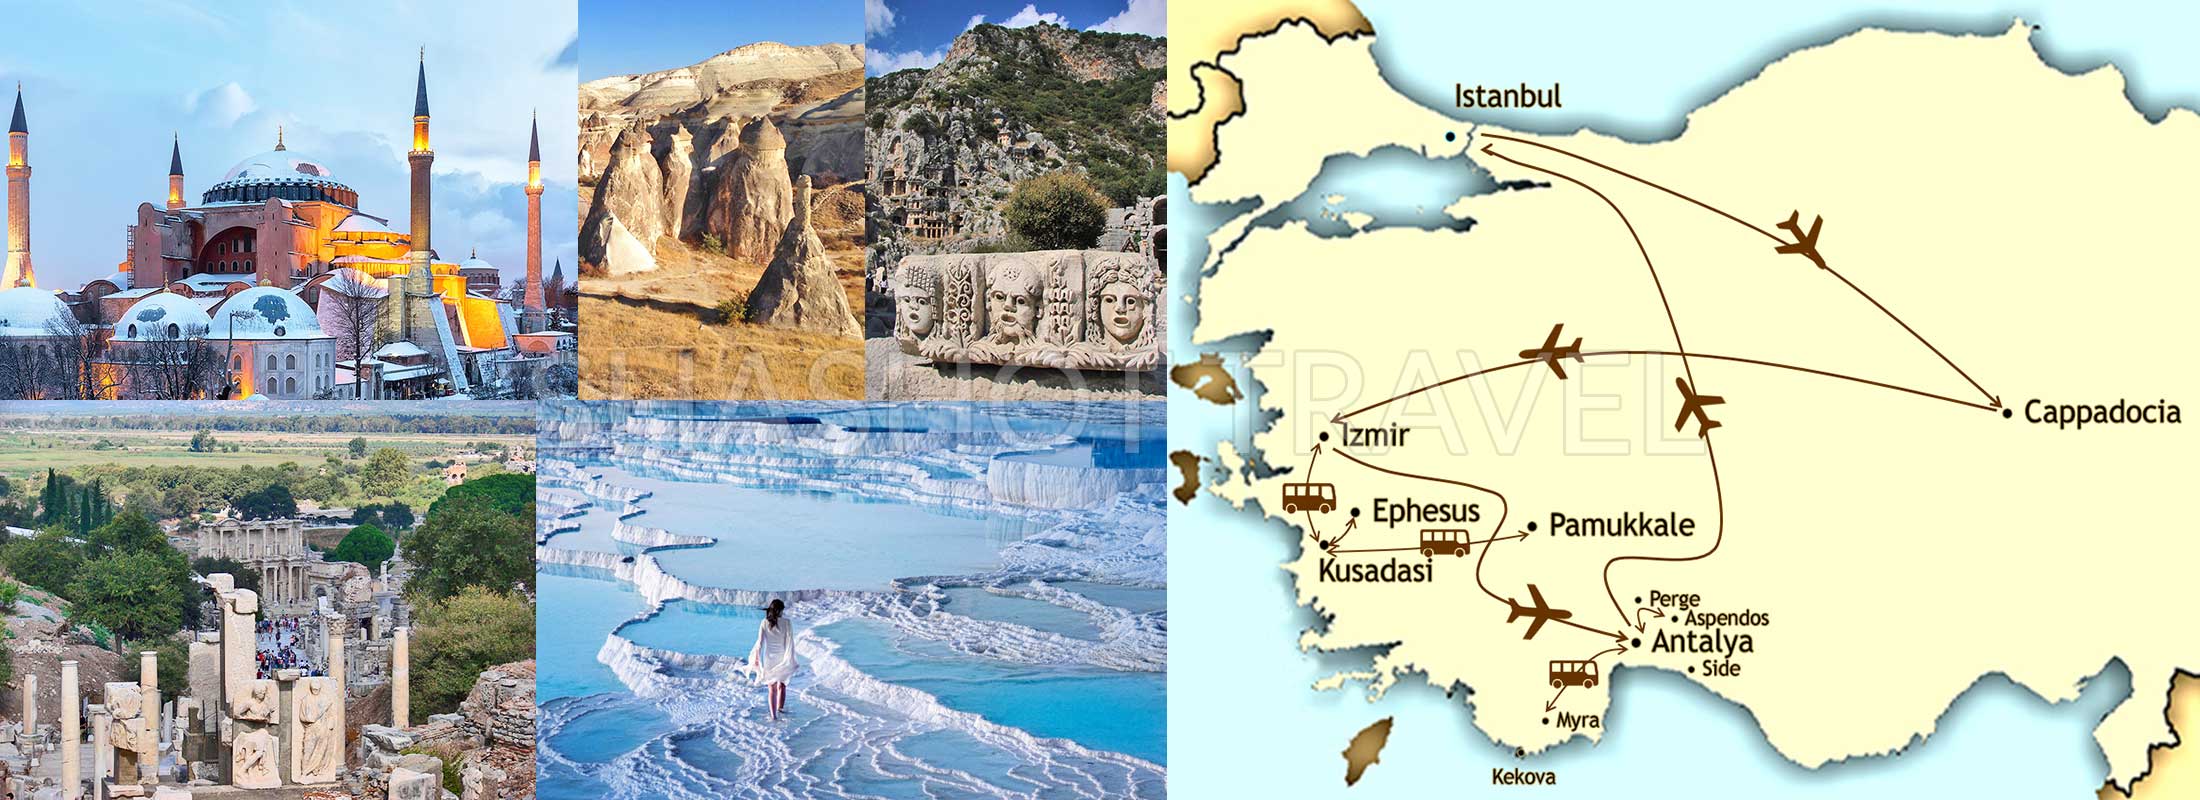 TURKEY-PACKAGE-TOUR-ISTANBUL-CAPPADOCIA-PAMUKKALE-EPHESUS-ANTALYA-map